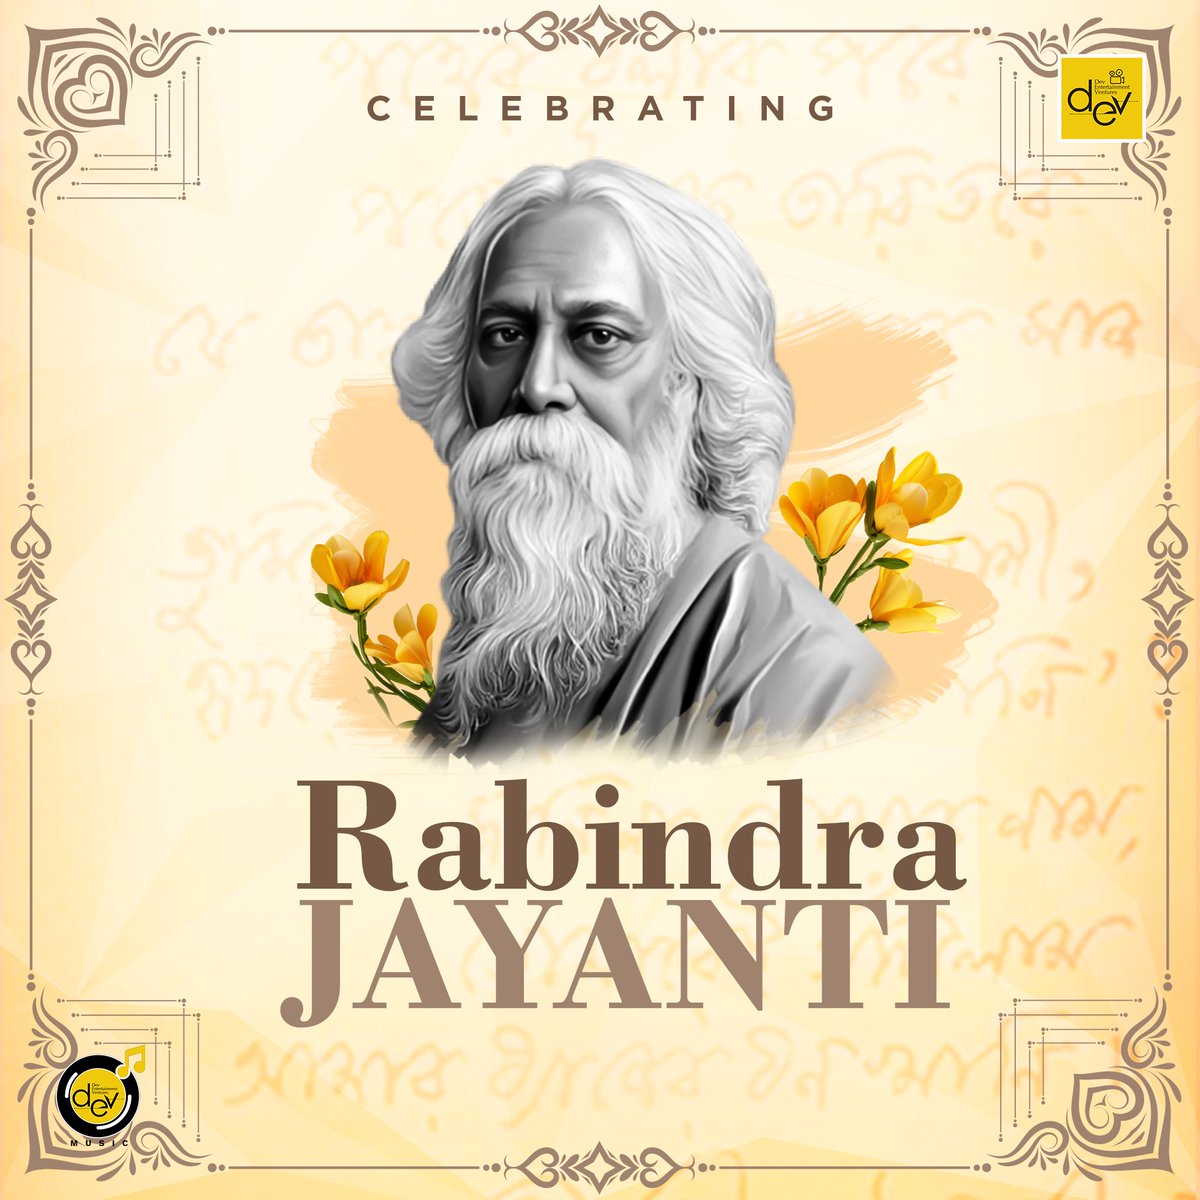 বিশ্বকবি রবীন্দ্রনাথ ঠাকুরের ১৬৩ তম জন্মদিবসে তাঁর প্রতি বিনম্র শ্রদ্ধার্ঘ্য। কবিগুরুর সত্য, ন্যায়, কল্যাণ ও মানবতার বাণী আমাদের জন্য অনন্ত প্রেরণার উৎস। #RabindraJayanti #25seBaisakh #Tagore163